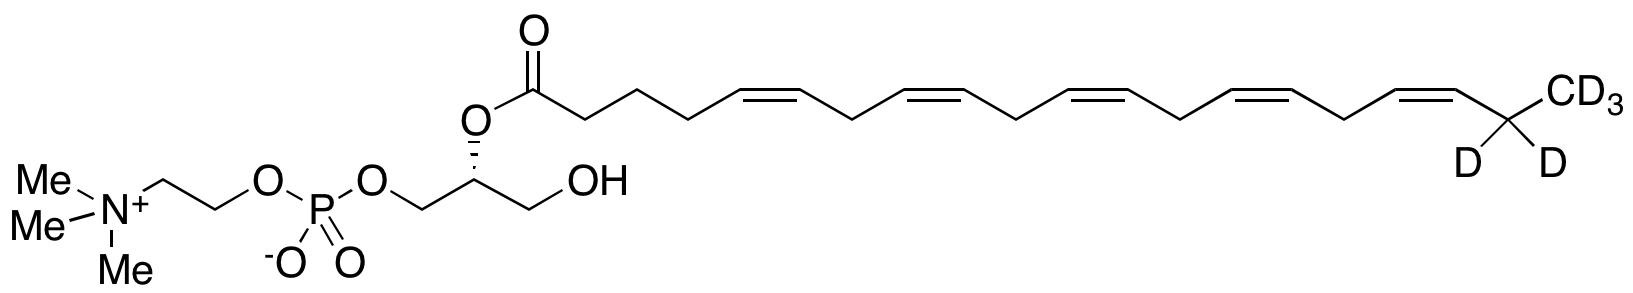 2-Eicosapentaenoyl-sn-glycerol-3-phosphocholine-d<sub>5</sub>